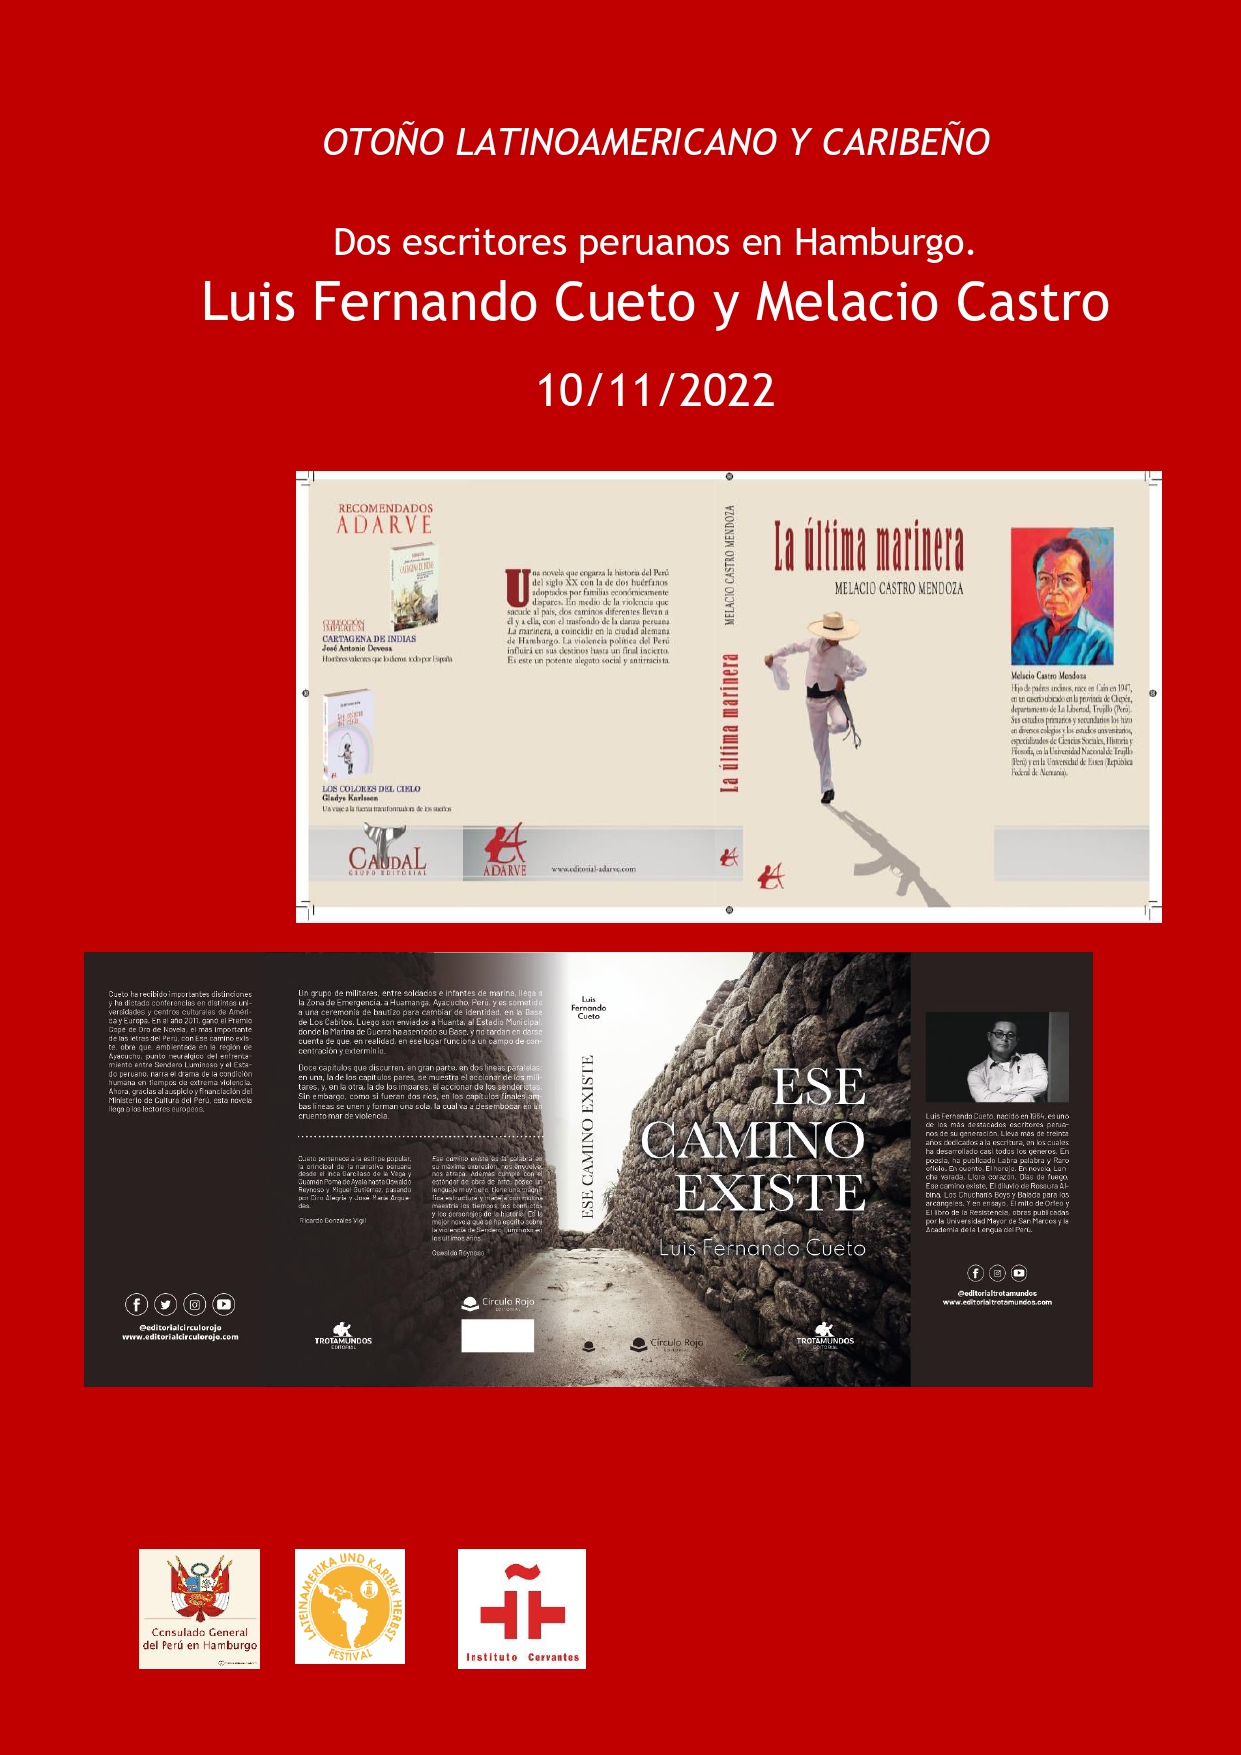 Zwei peruanische Autoren in Hamburg. Geschichte und Literatur mit Fernando Cueto und Melacio Castro